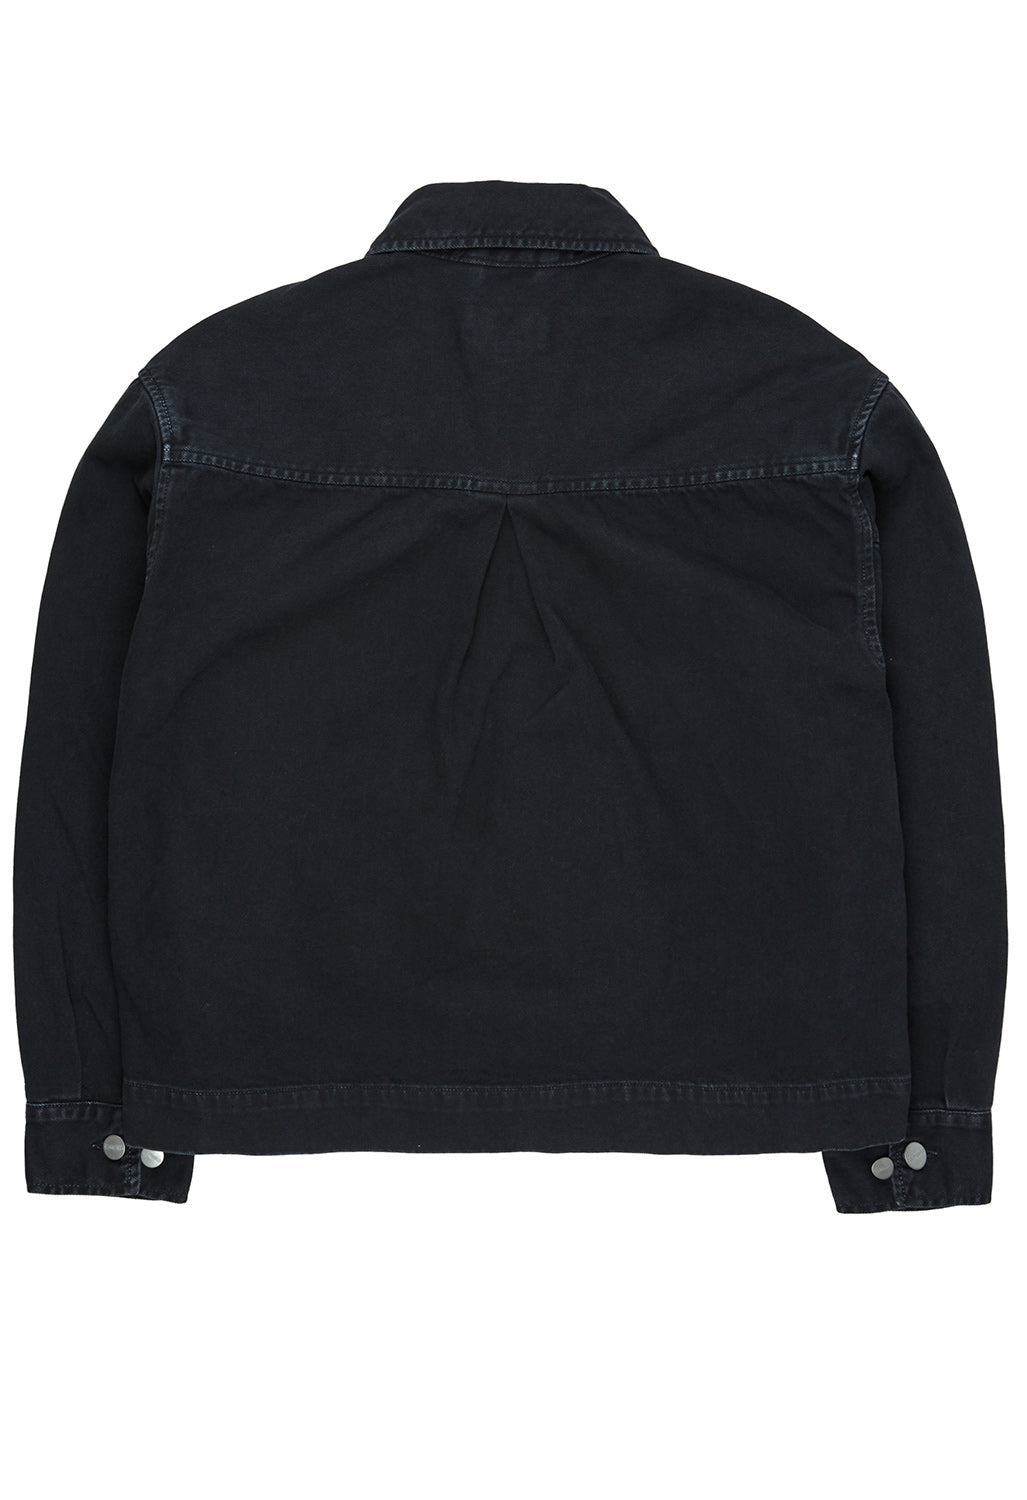 Carhartt WIP Women's Garrison Jacket - Black